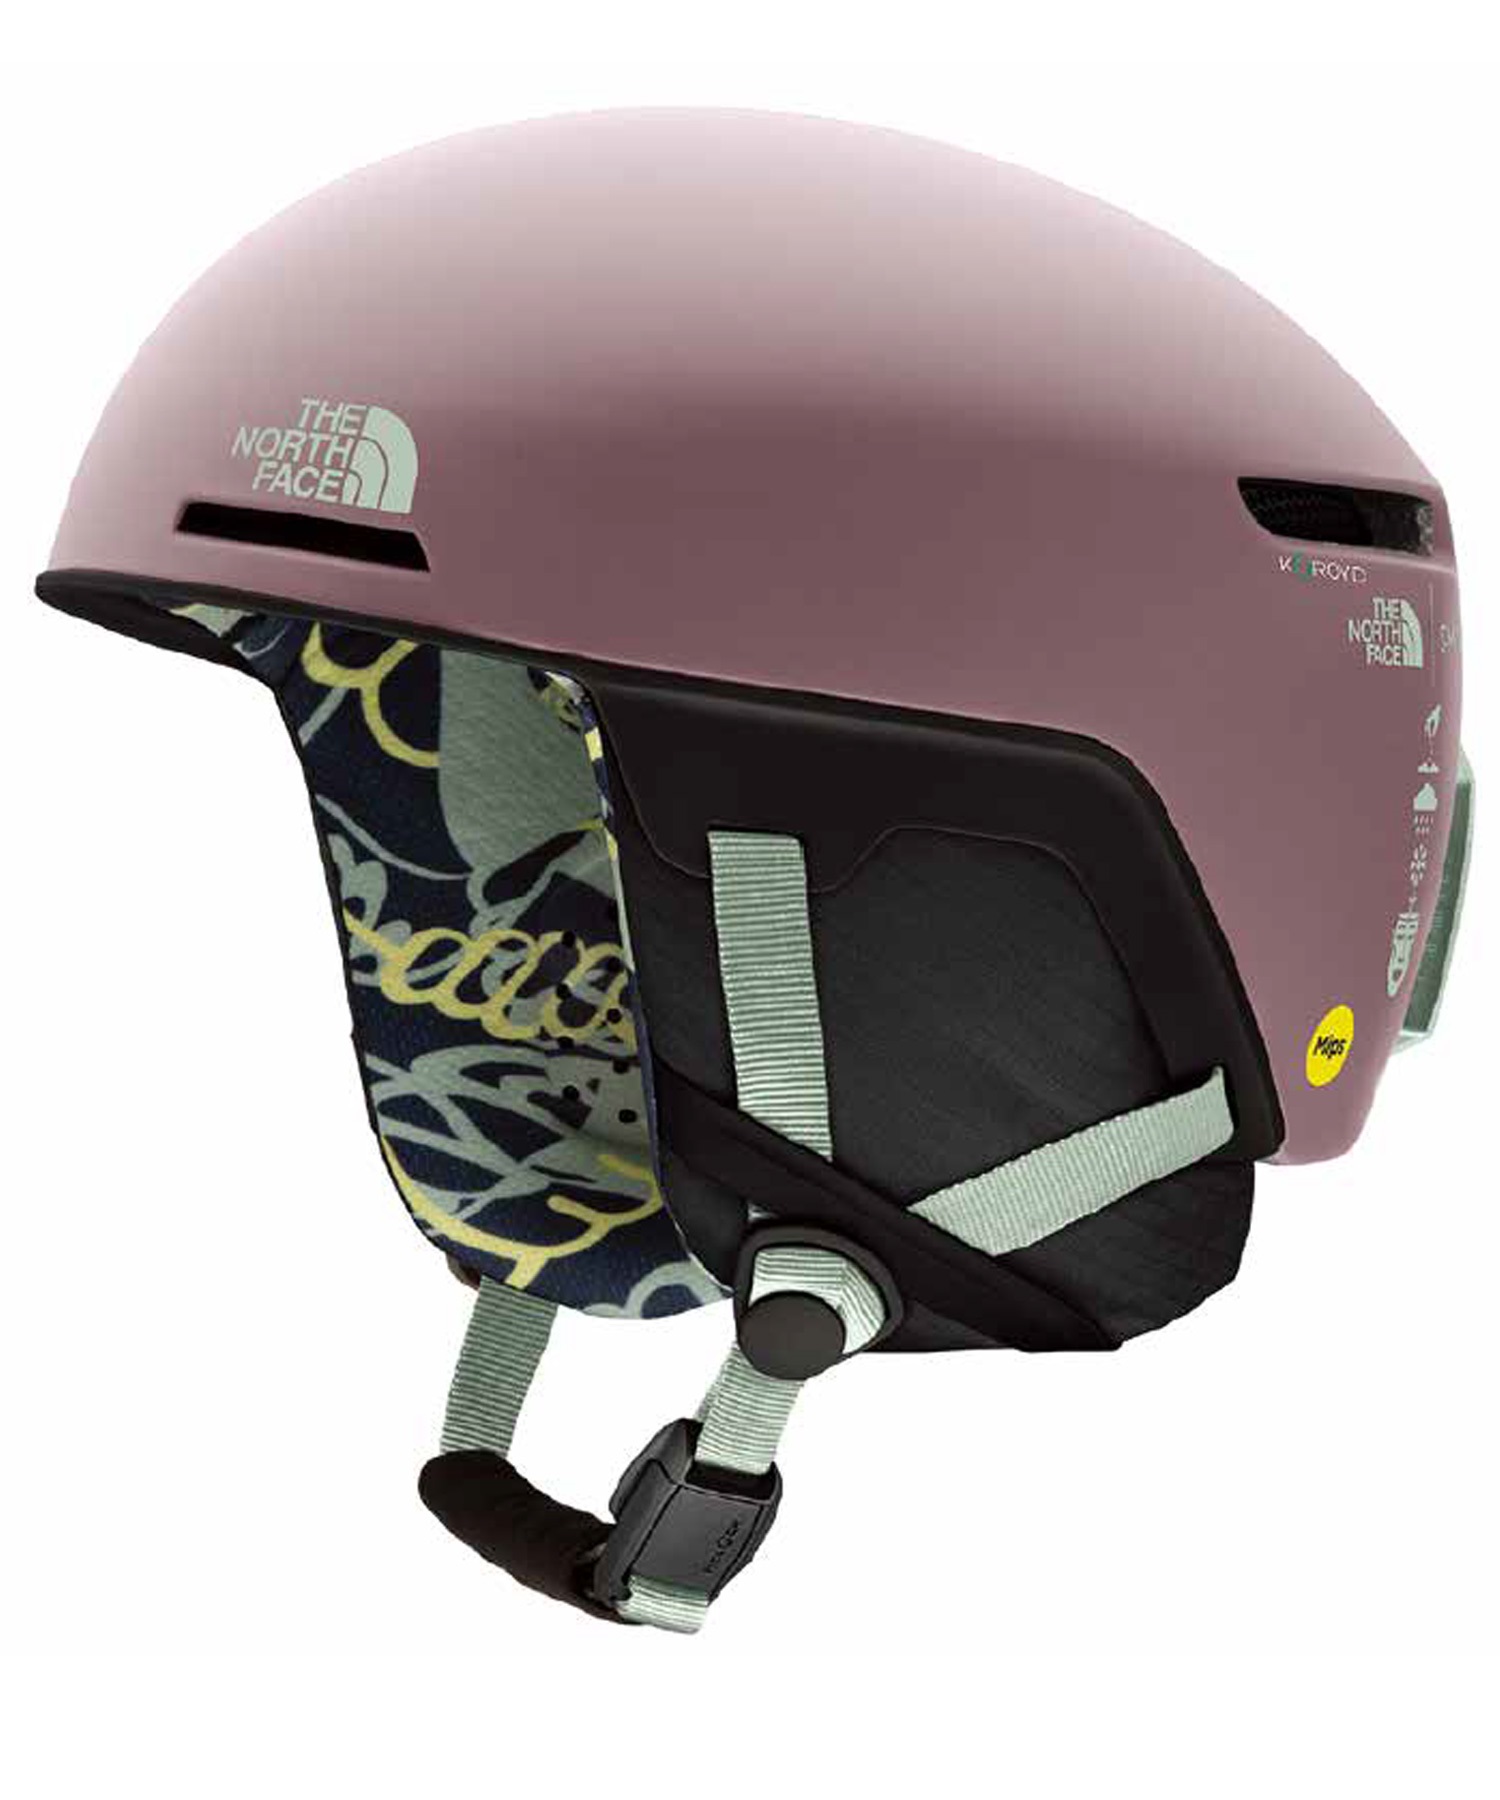 スノーボード ヘルメット SMITH スミス CODE MIPS ASIA-FIT 23-24モデル ムラサキスポーツ KK G7(MATTETNFFAWNGREY-S)